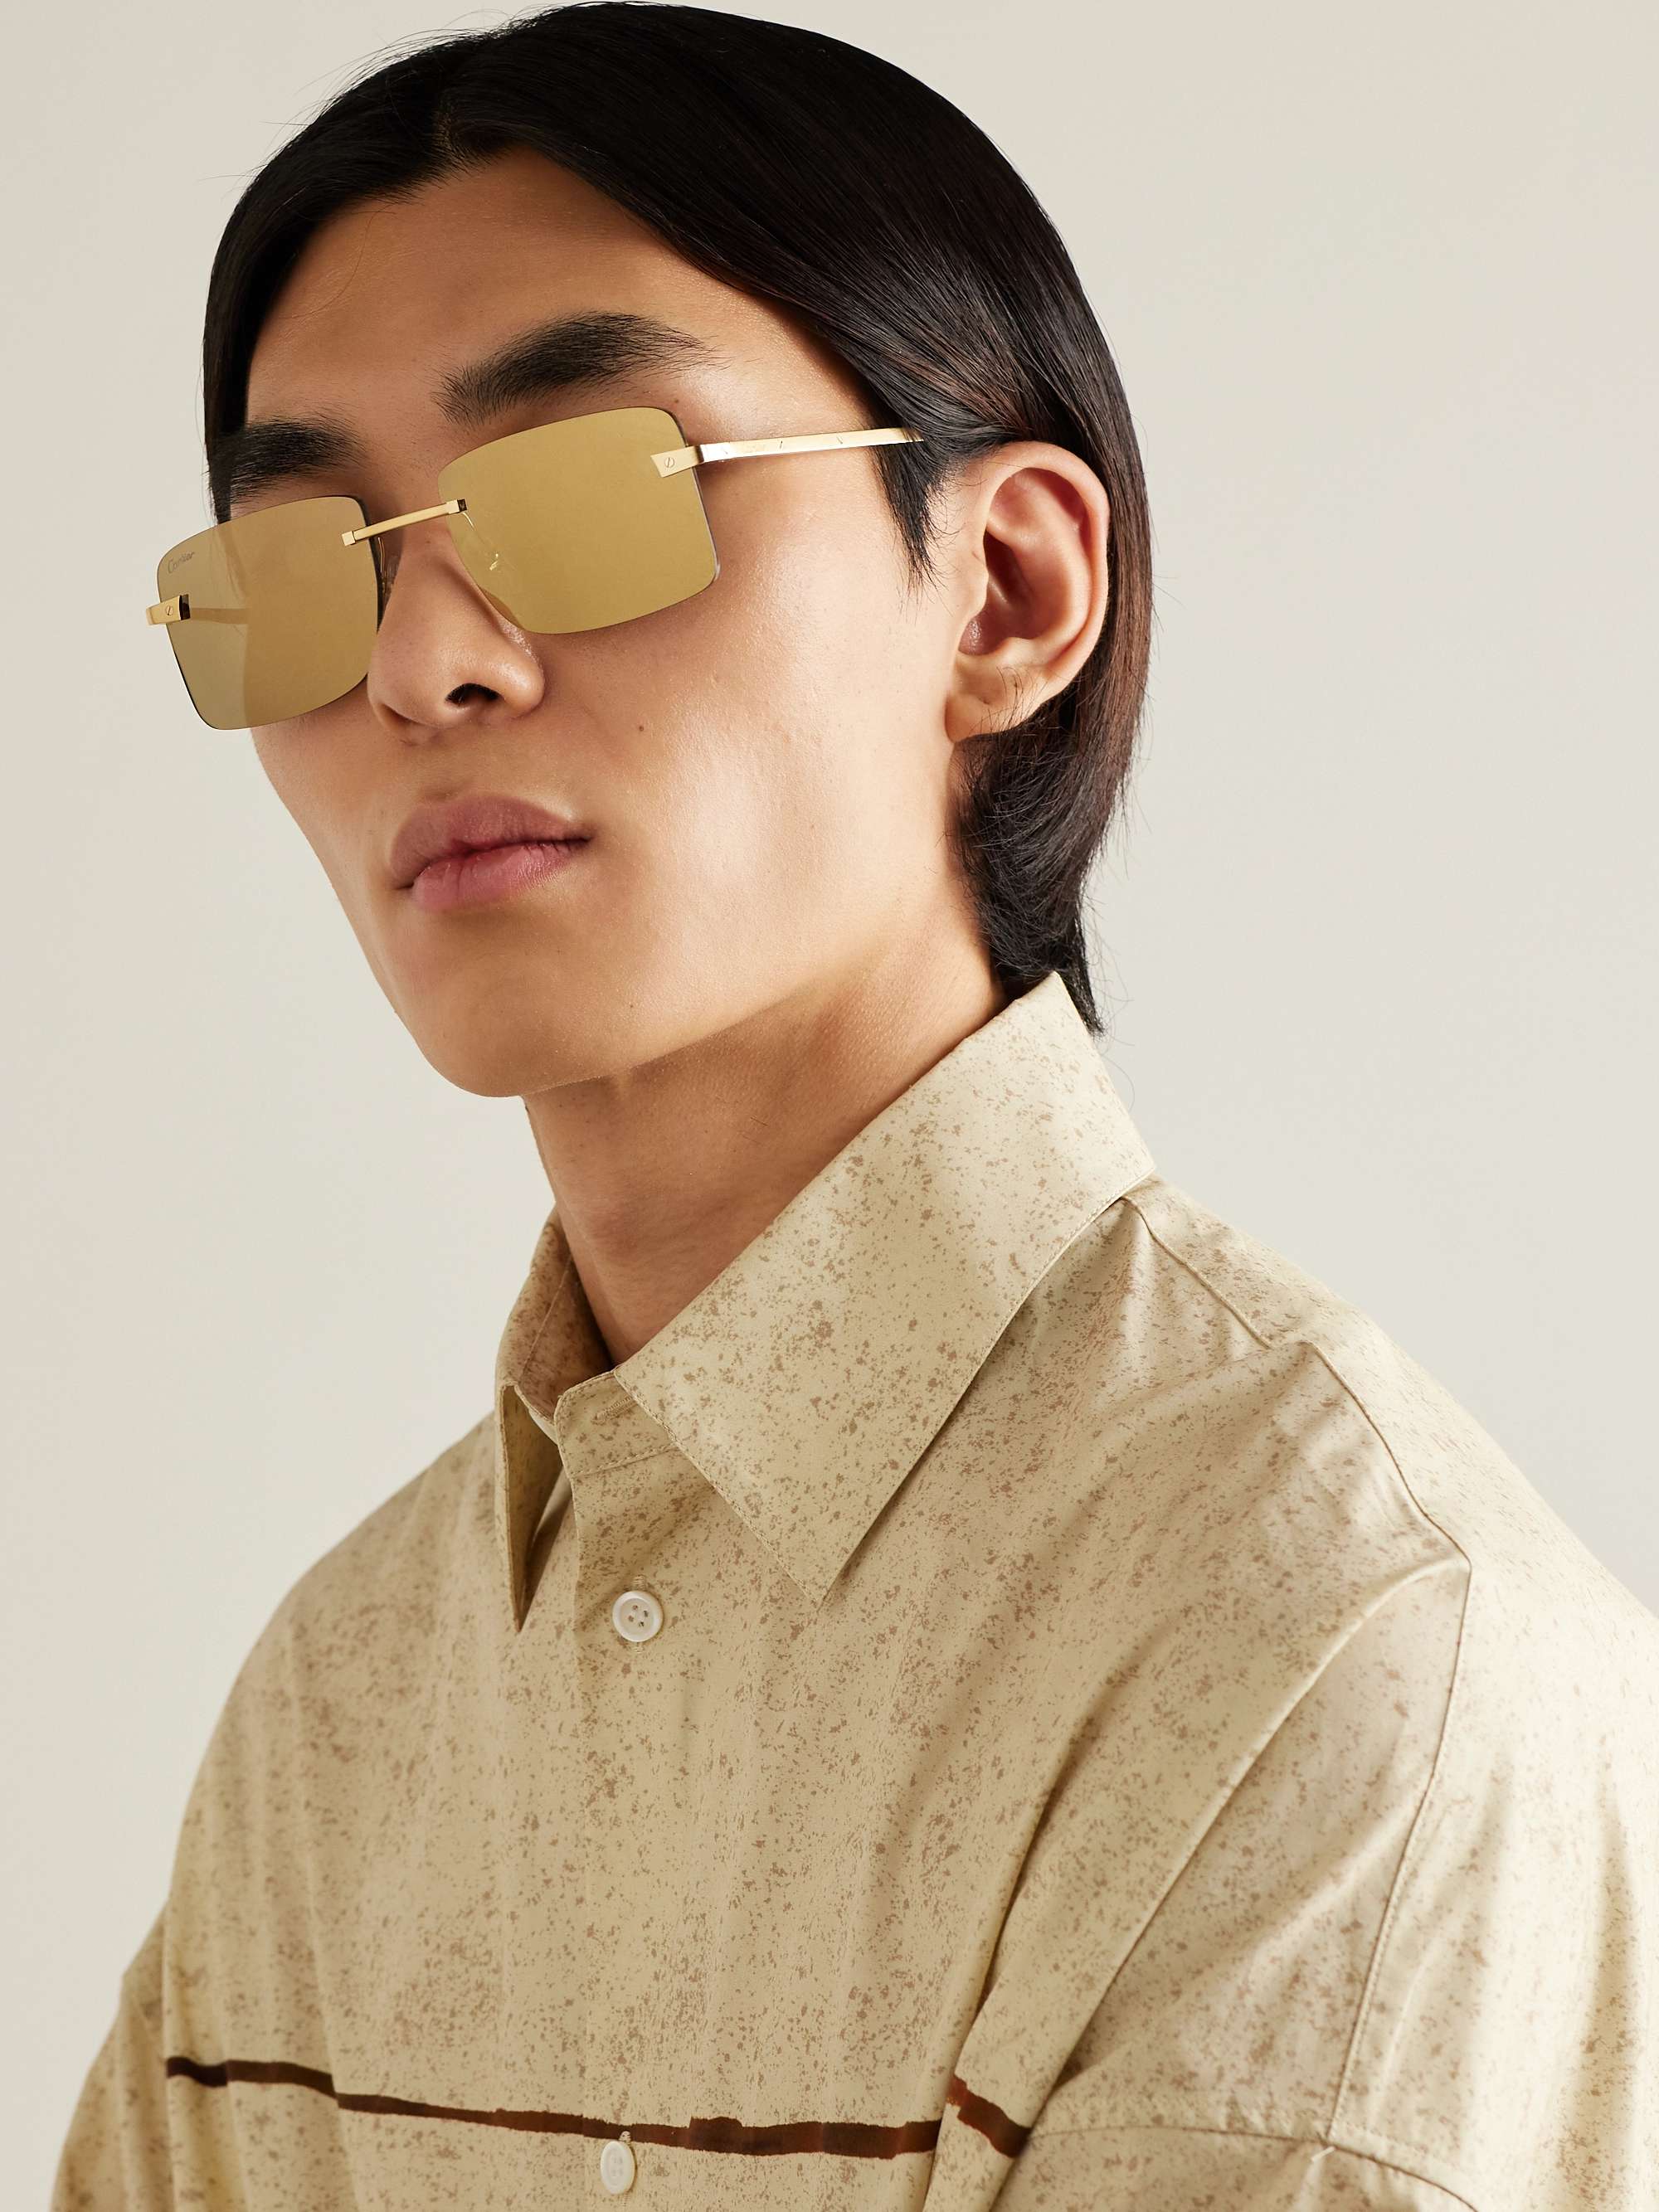 Santos rahmenlose Sonnenbrille mit goldfarbenen Details | MR PORTER